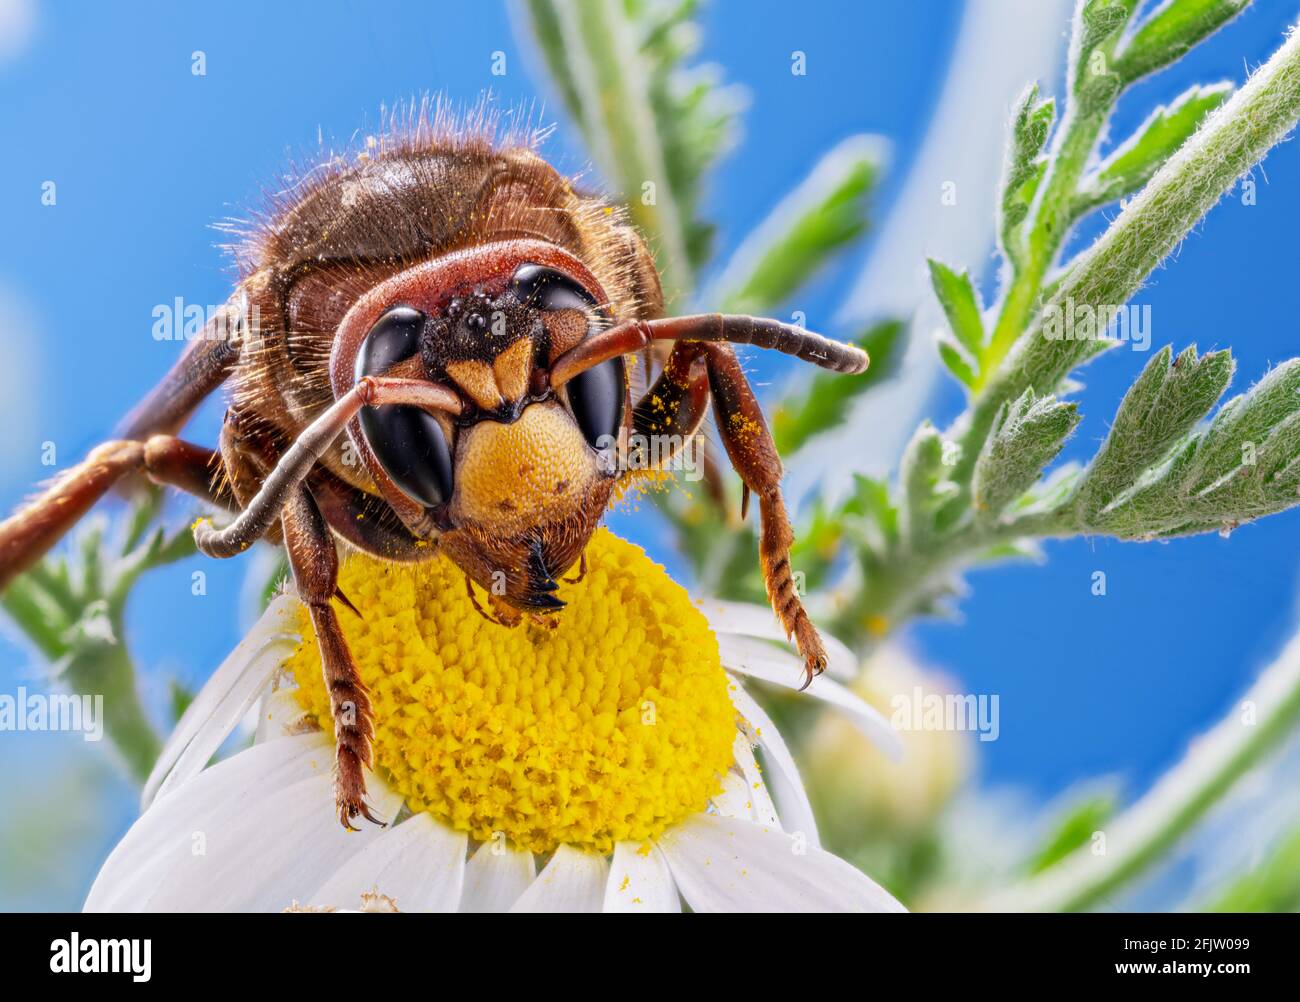 Gros plan de l'insecte hornet mangeant le nectar de la fleur de Marguerite. La marge supérieure de la tête et tous les détails du corps sont bien visibles sur l'image. Banque D'Images